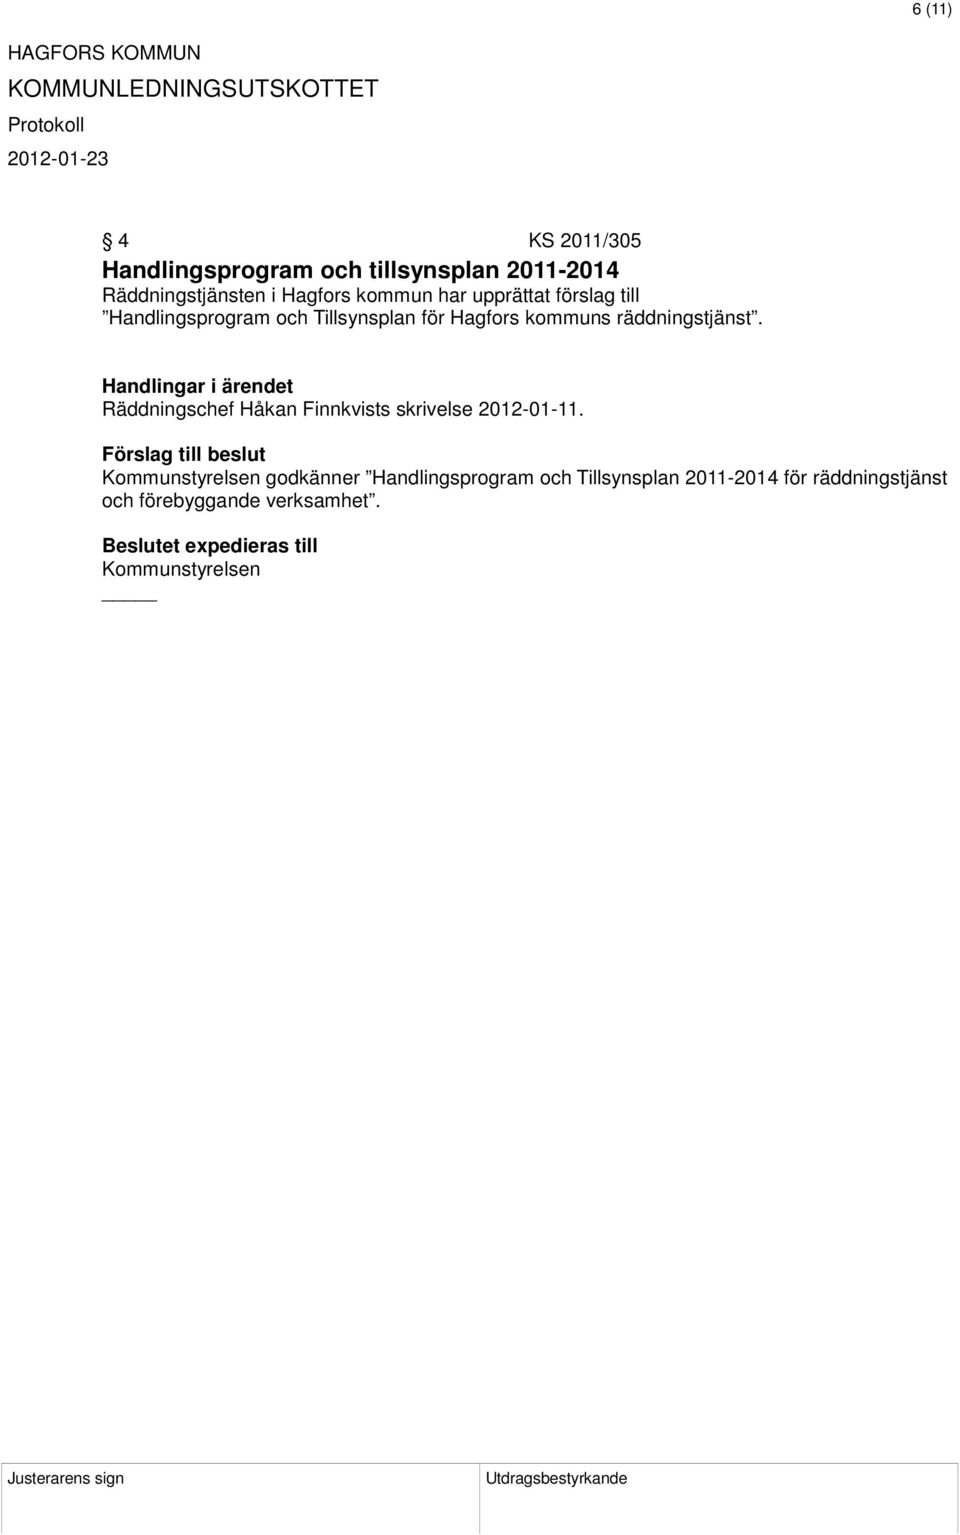 räddningstjänst. Räddningschef Håkan Finnkvists skrivelse 2012-01-11.